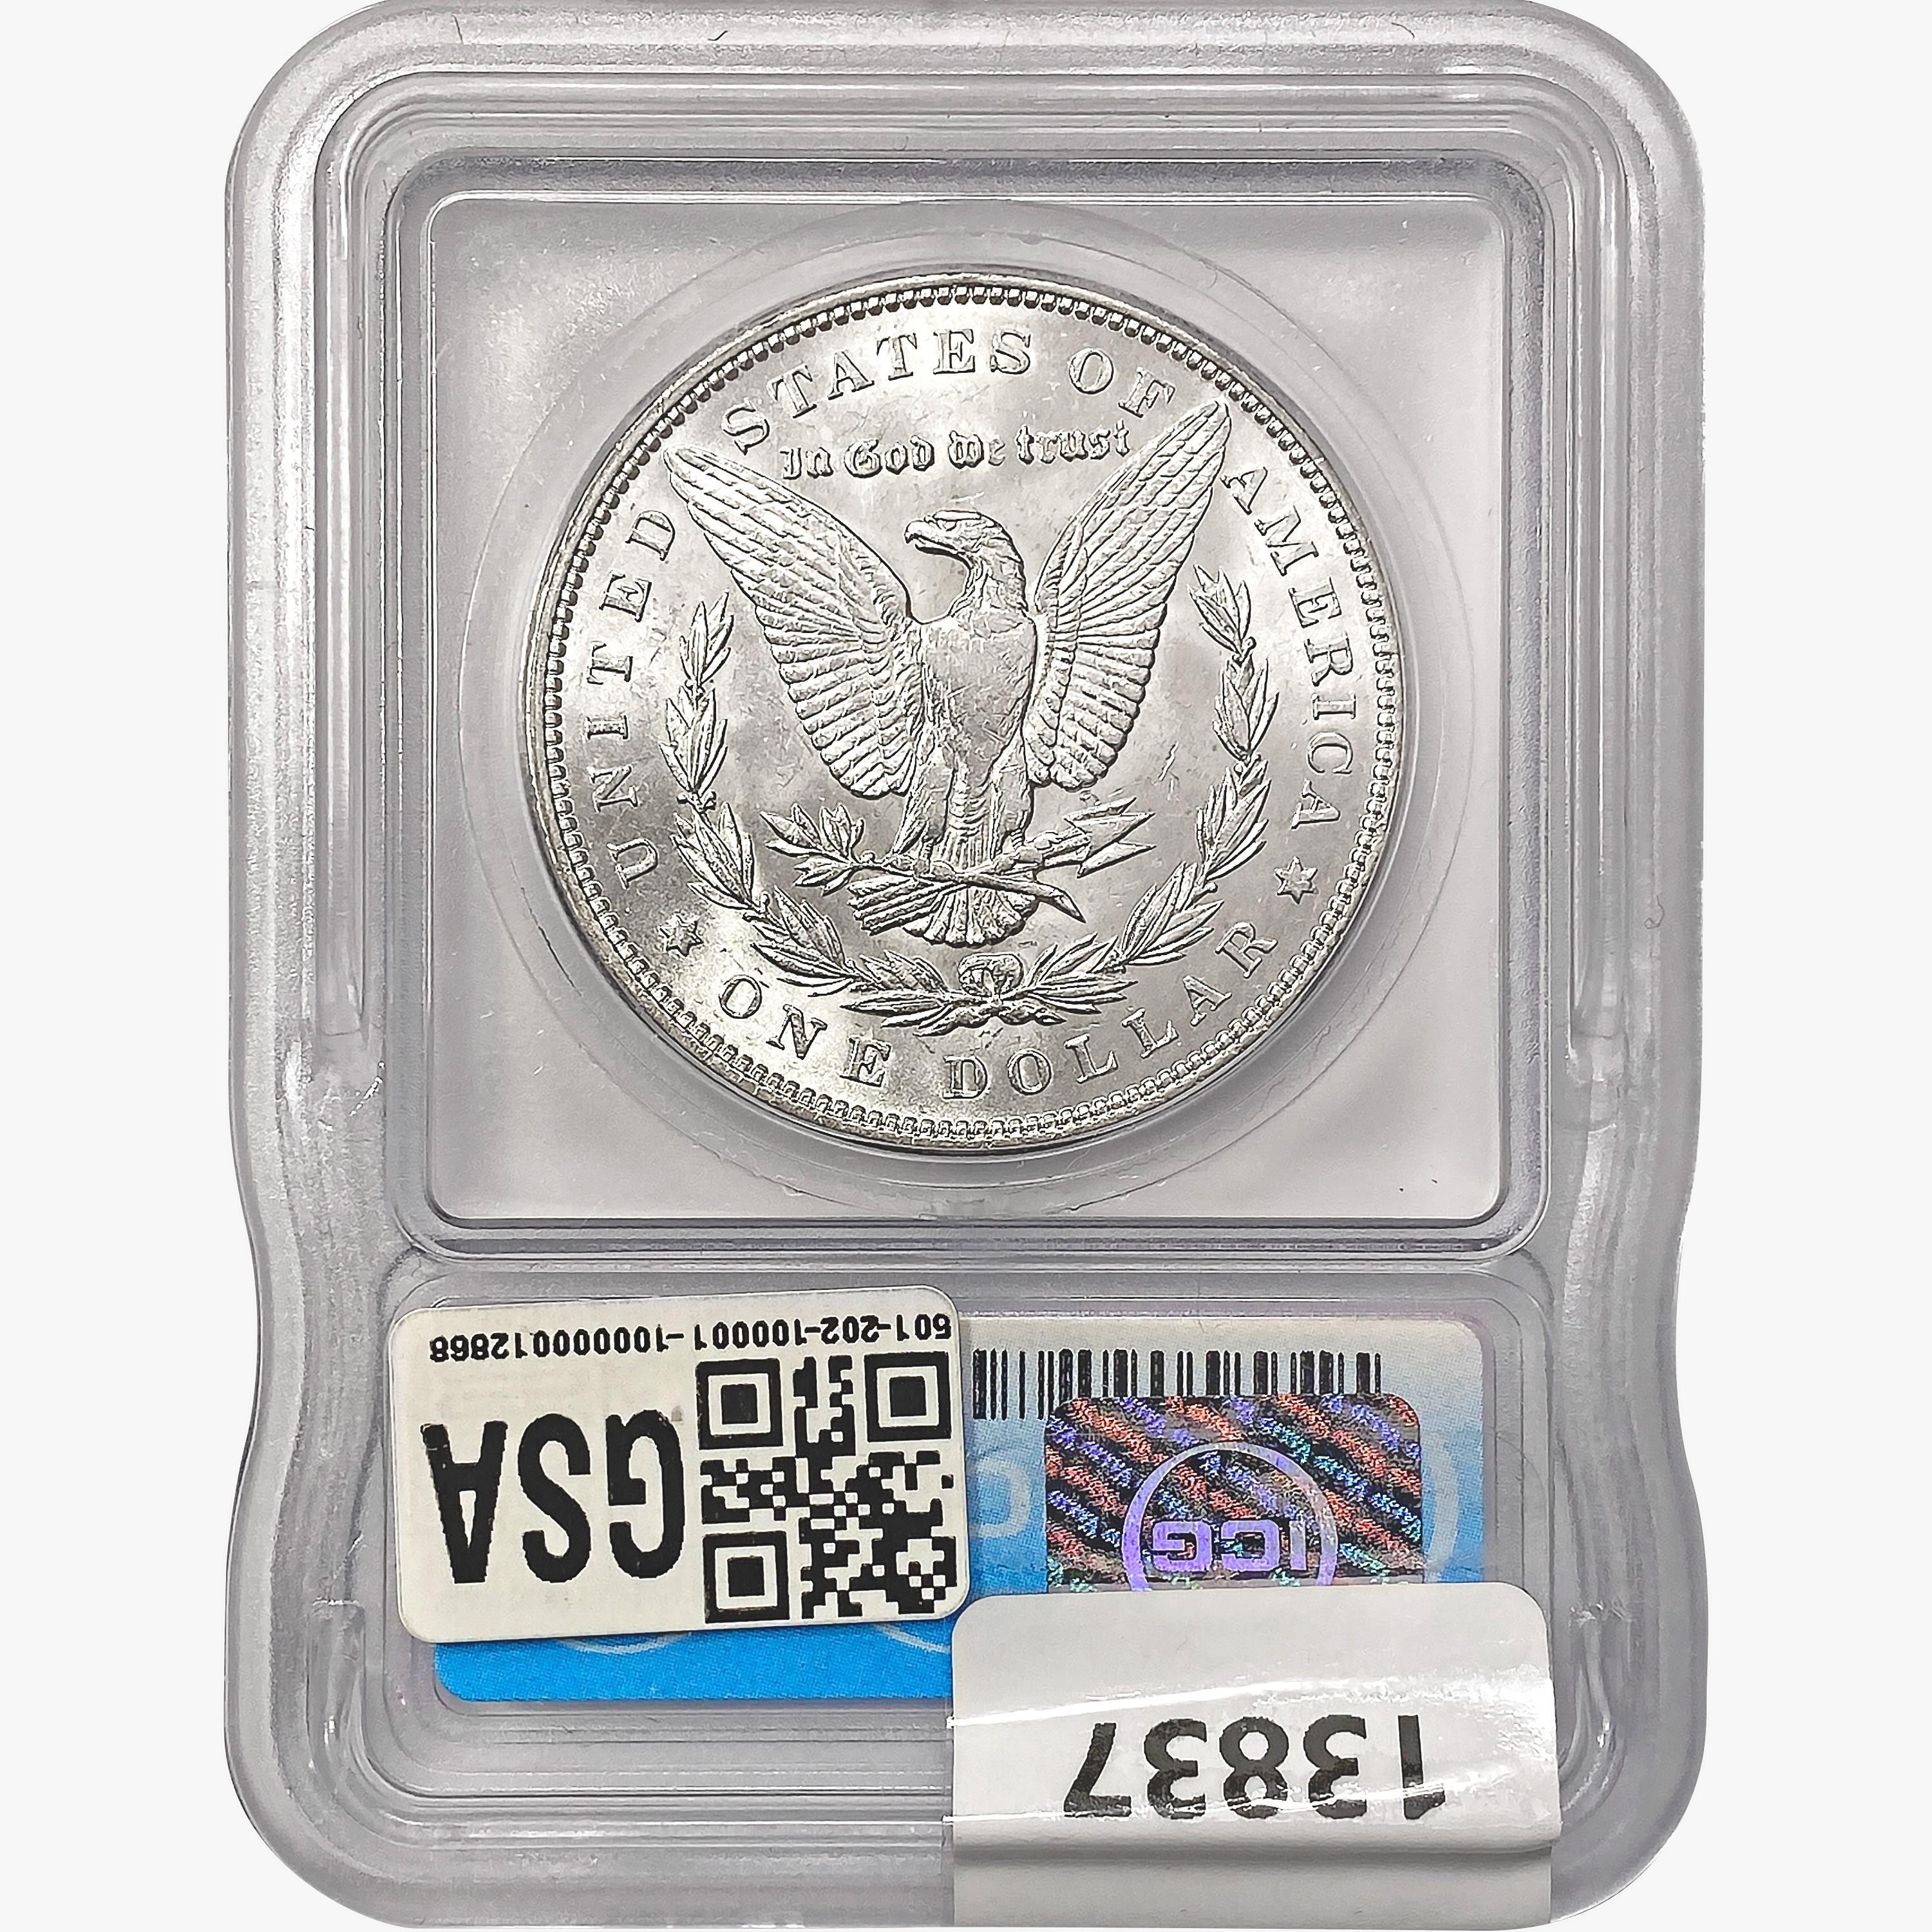 1892 Morgan Silver Dollar ICG MS60